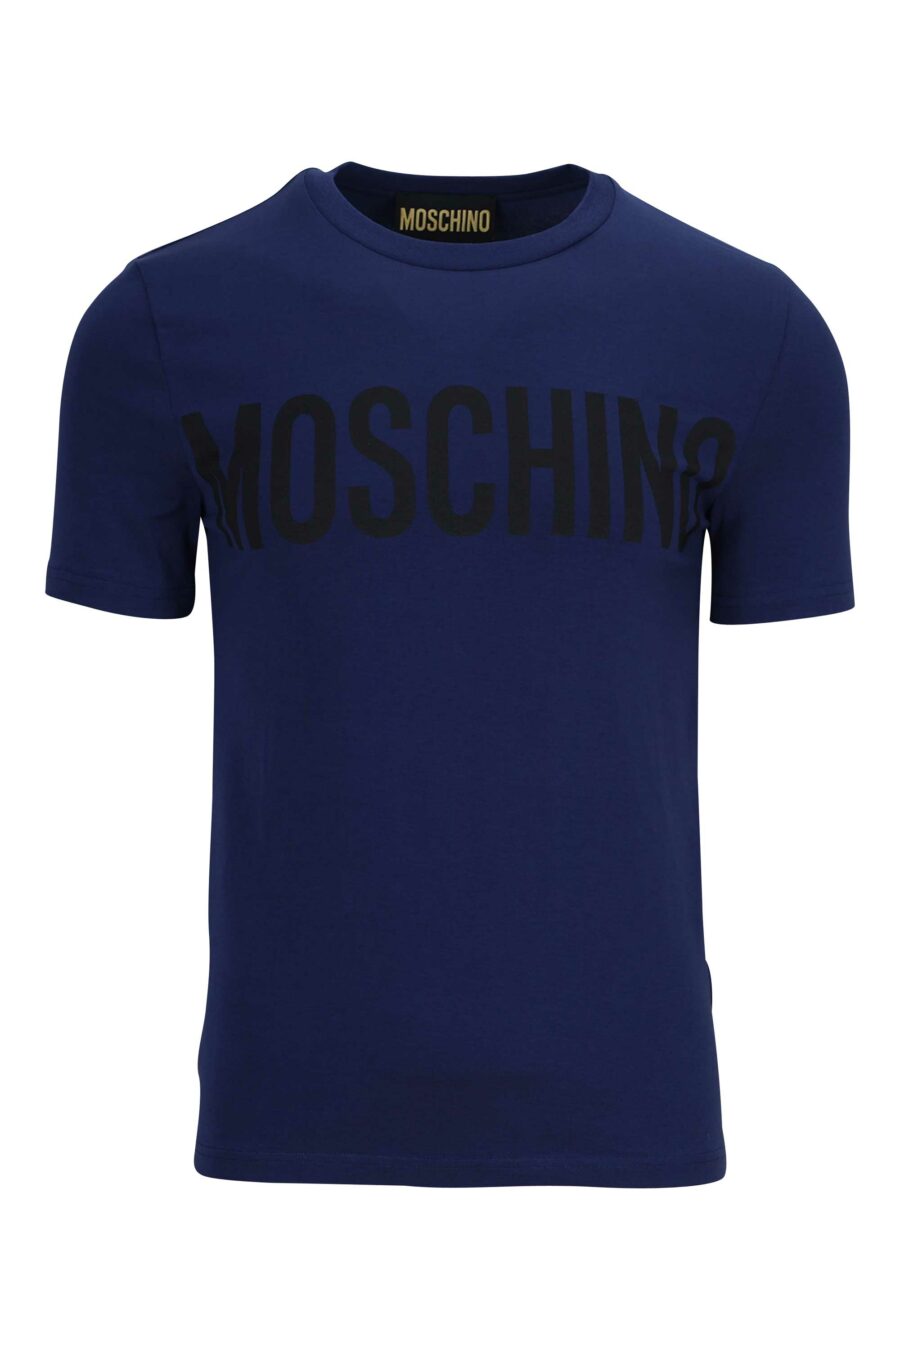 T-shirt bleu marine avec maxilogue noir - 889316649383